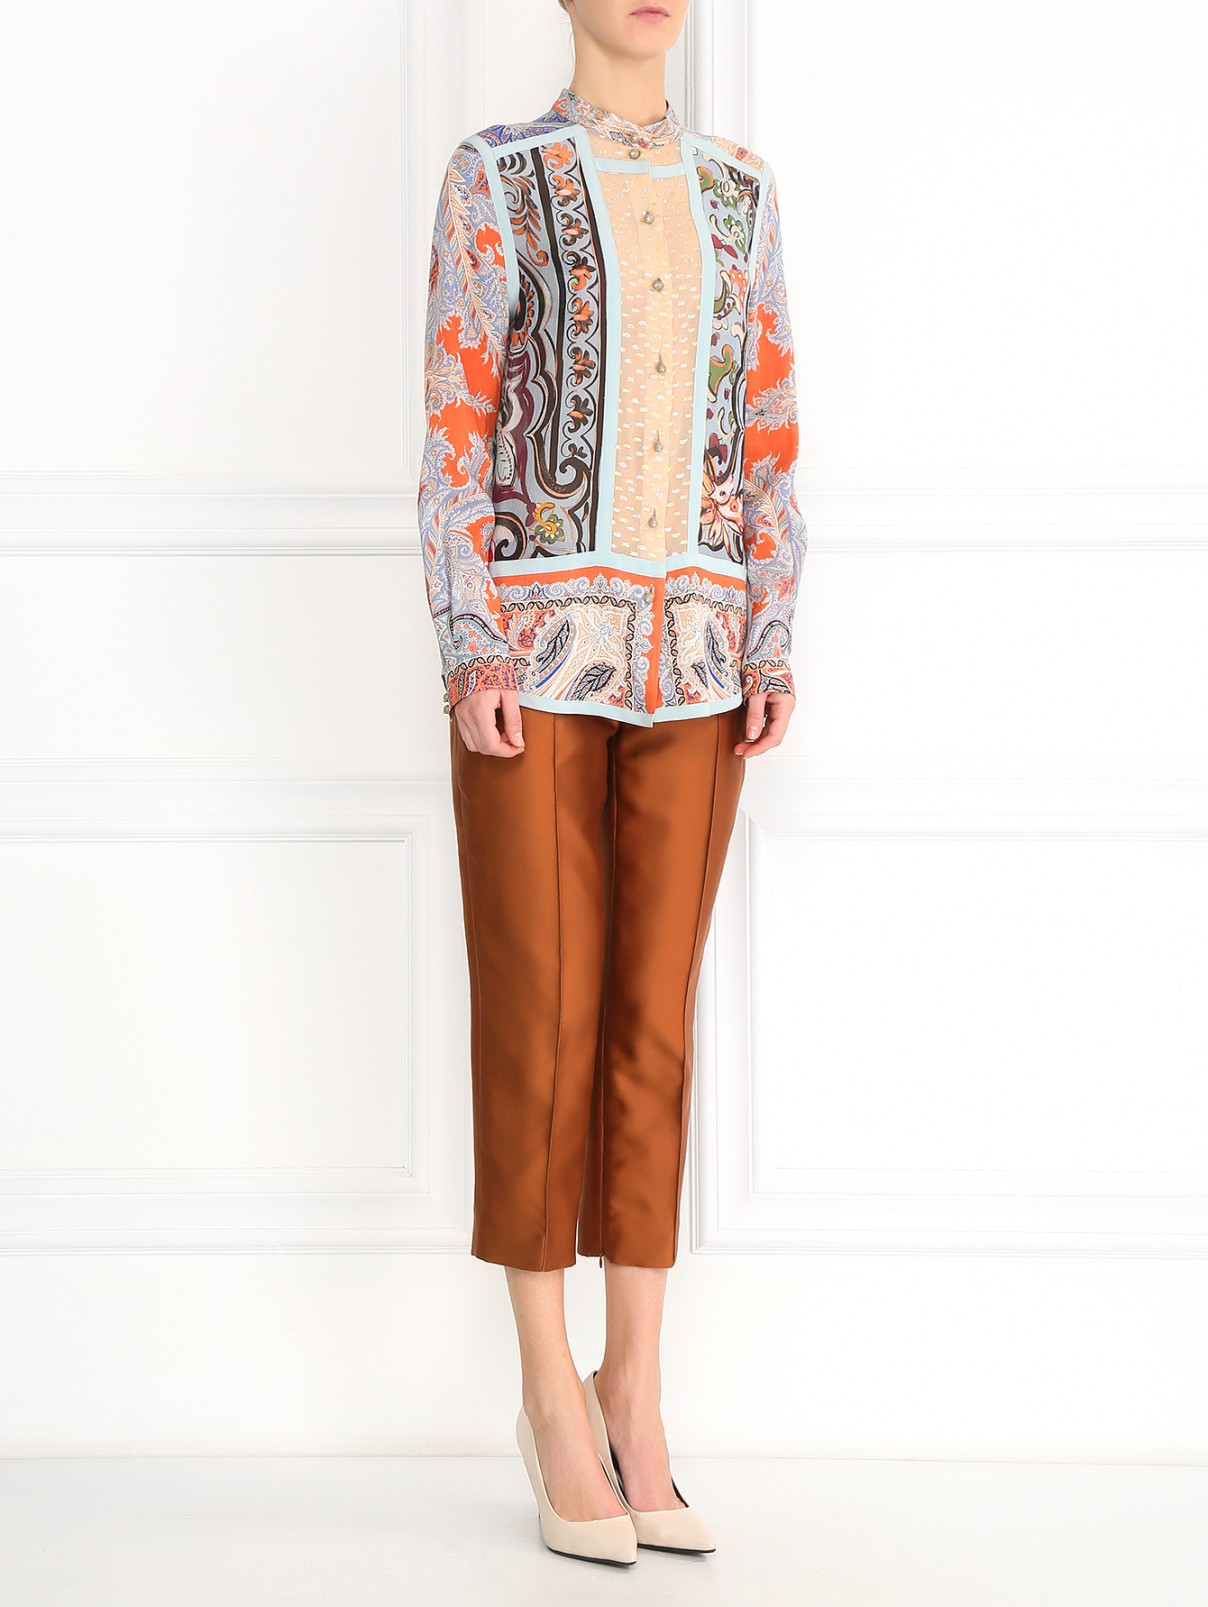 Блуза из шелка, шерсти и кашемира с узором "пейсли" Etro  –  Модель Общий вид  – Цвет:  Узор